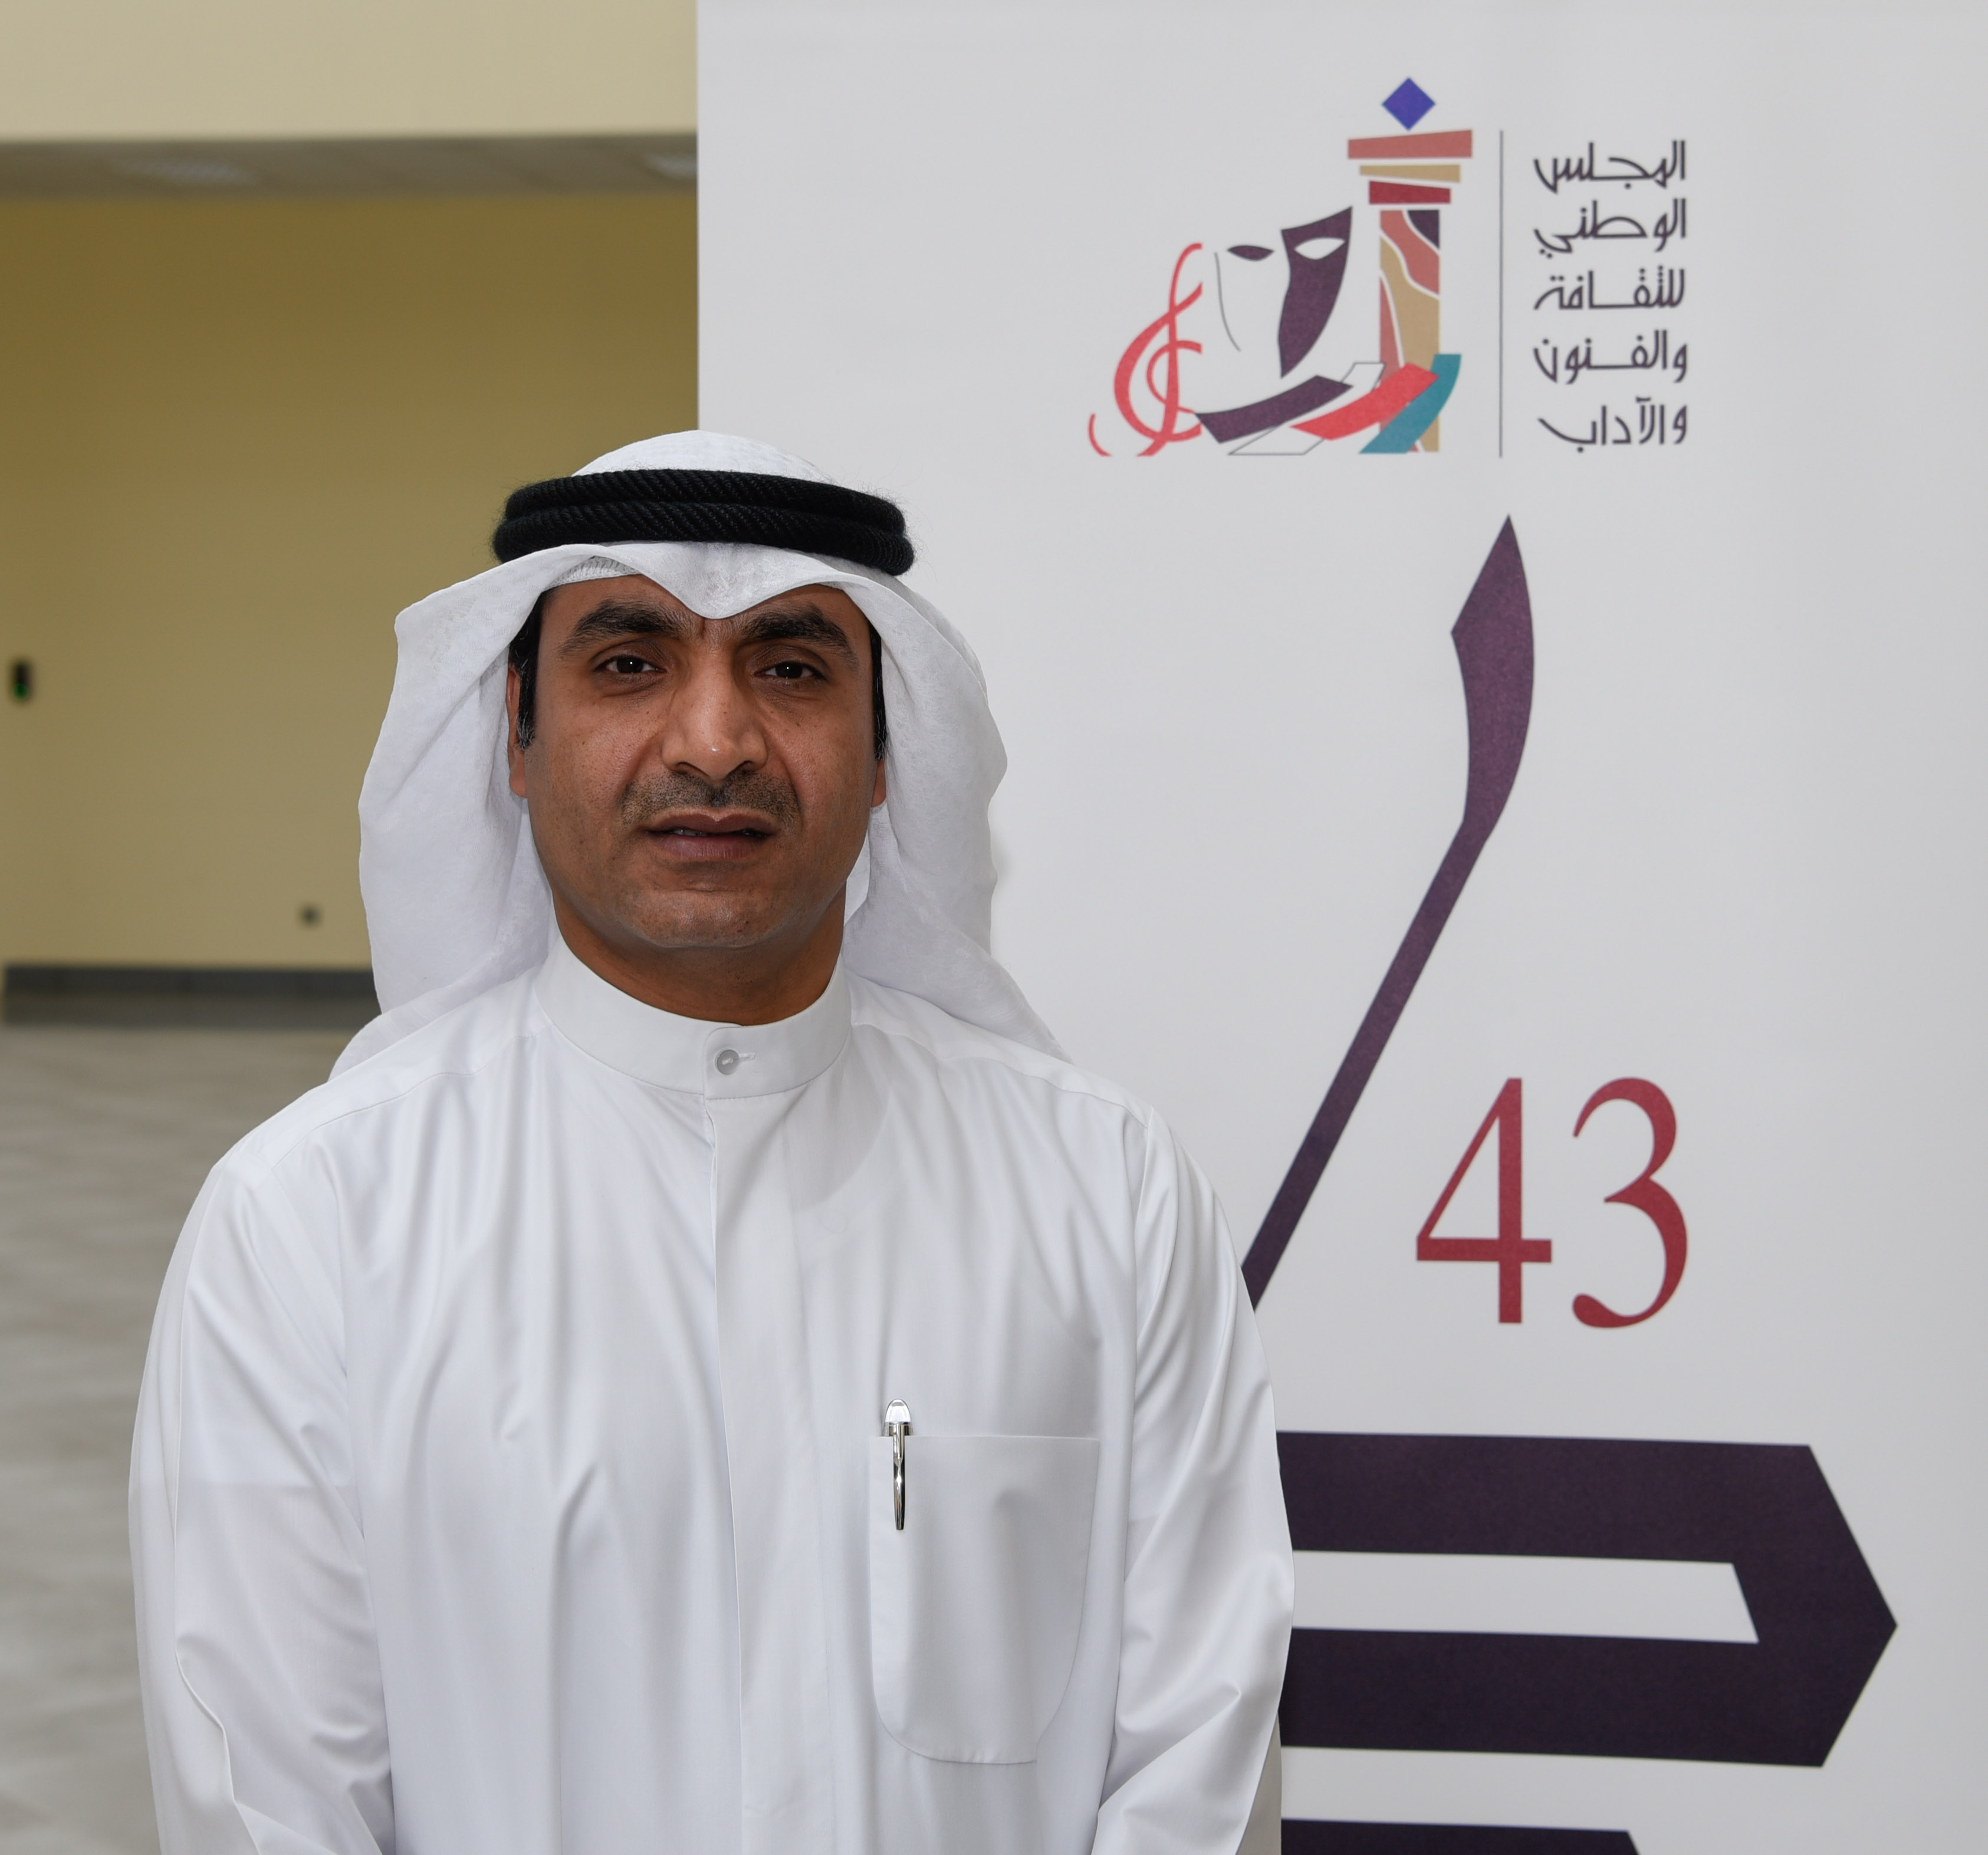 Le directeur de la 43e édition du salon international du livre, Saad Al-Anzi